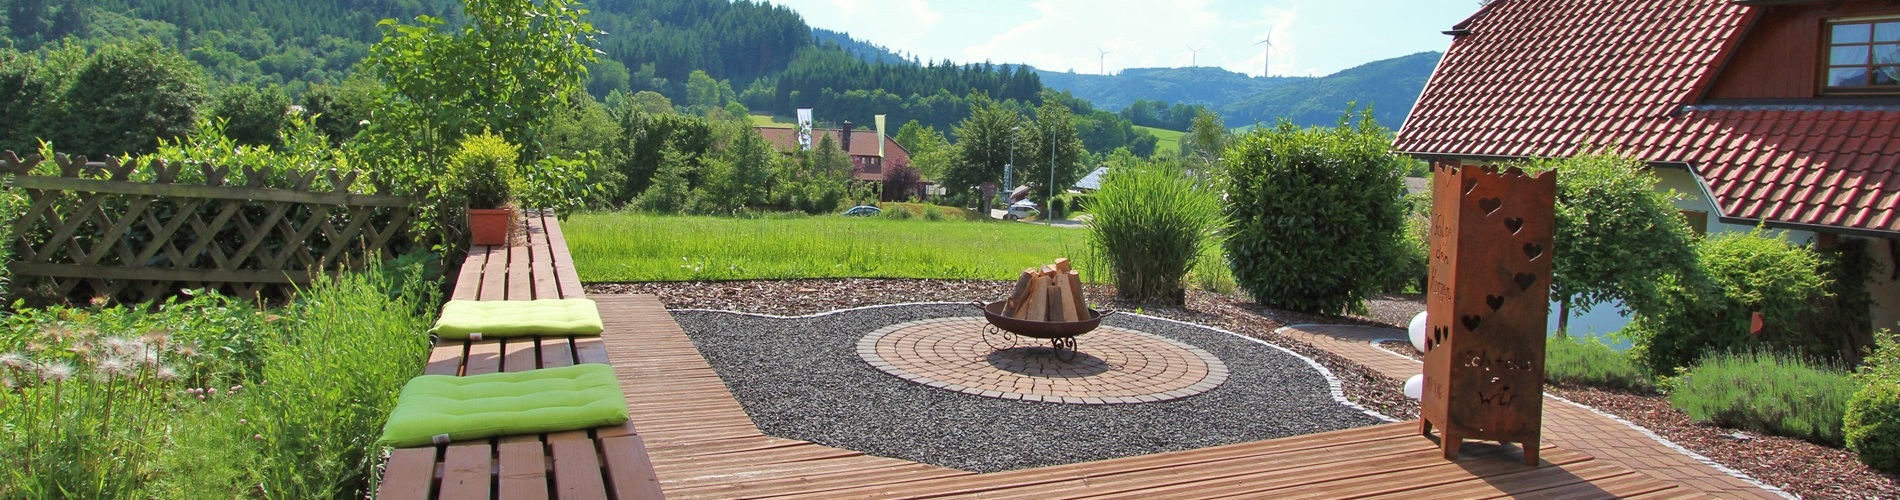 Ausblick über den Garten der Ferienwohnungen Enders mit Blick auf den gegenüberliegenden Berg Grassert